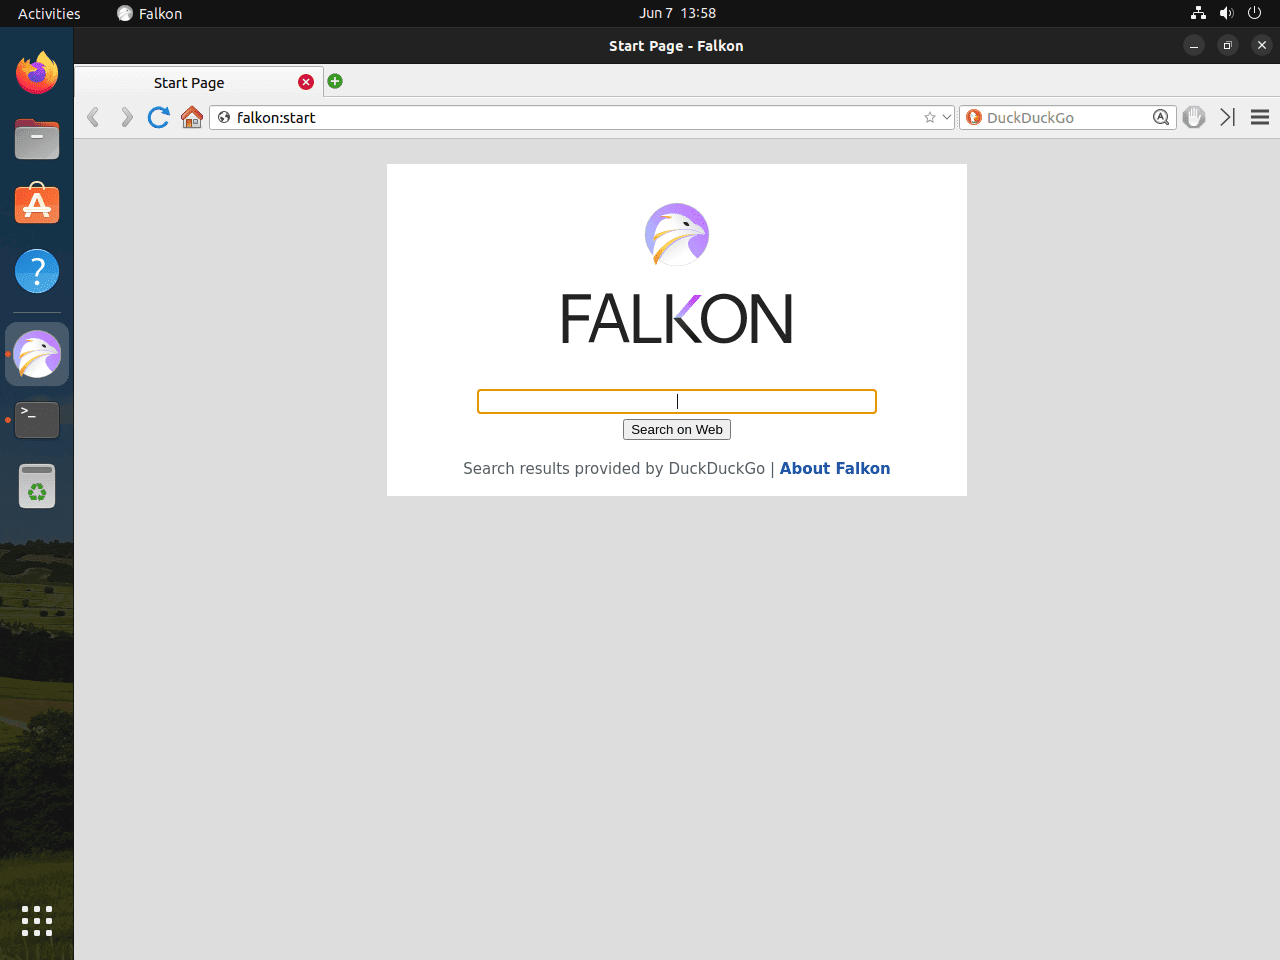 How to Install Falkon on Ubuntu 22.04